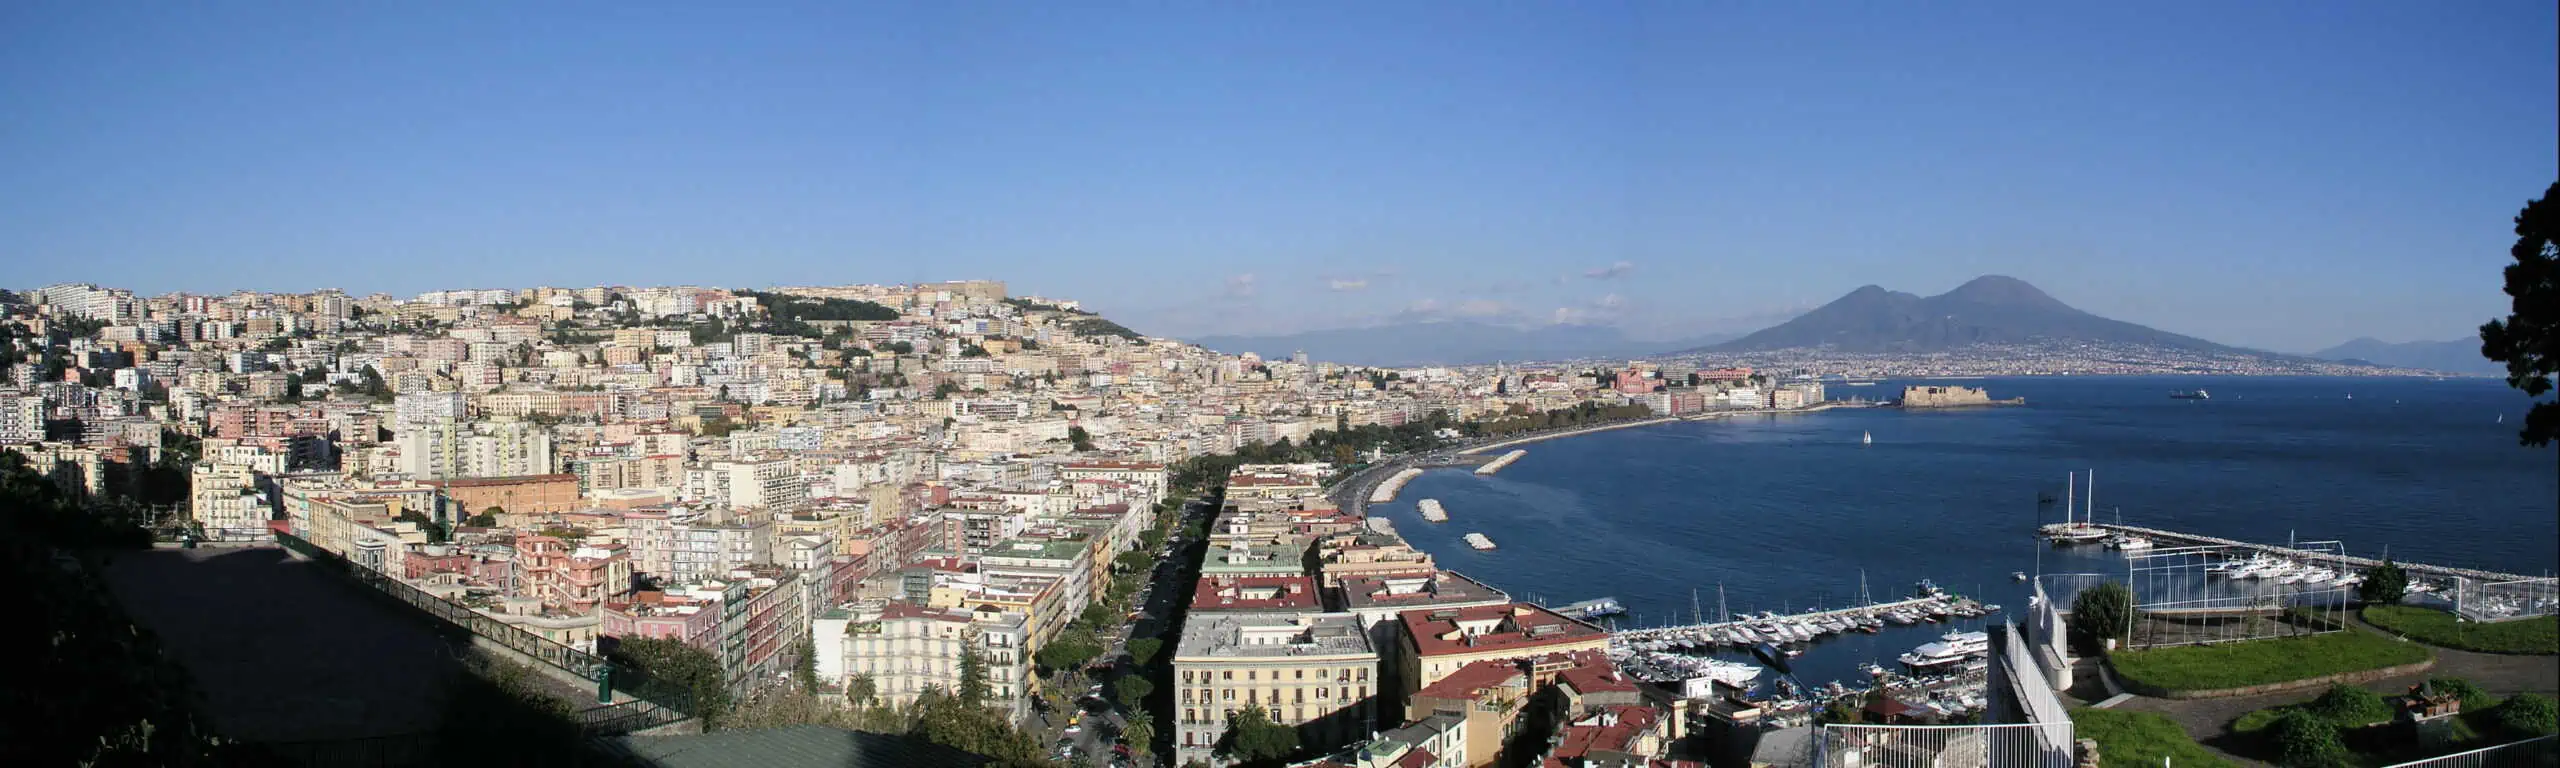 Cosa vedere a Napoli? Una guida alla città partenopea